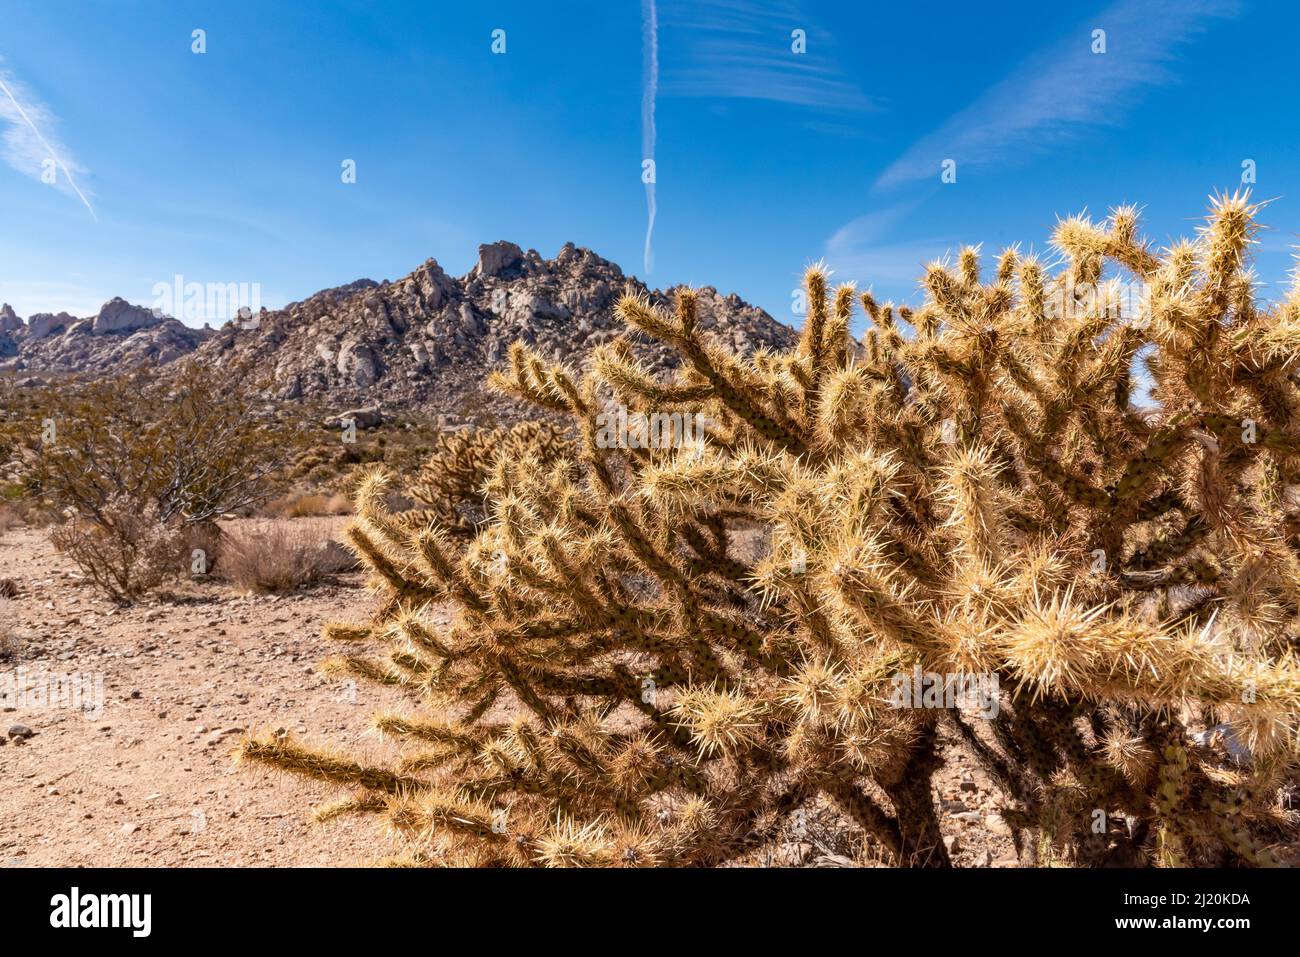 Landschaftlich reizvolle Ausblicke aus der Mojave-Wüste, Kalifornien, an einem wunderschönen Tag mit blauem Himmel und Cholla-Kaktus im Vordergrund. Stockfoto